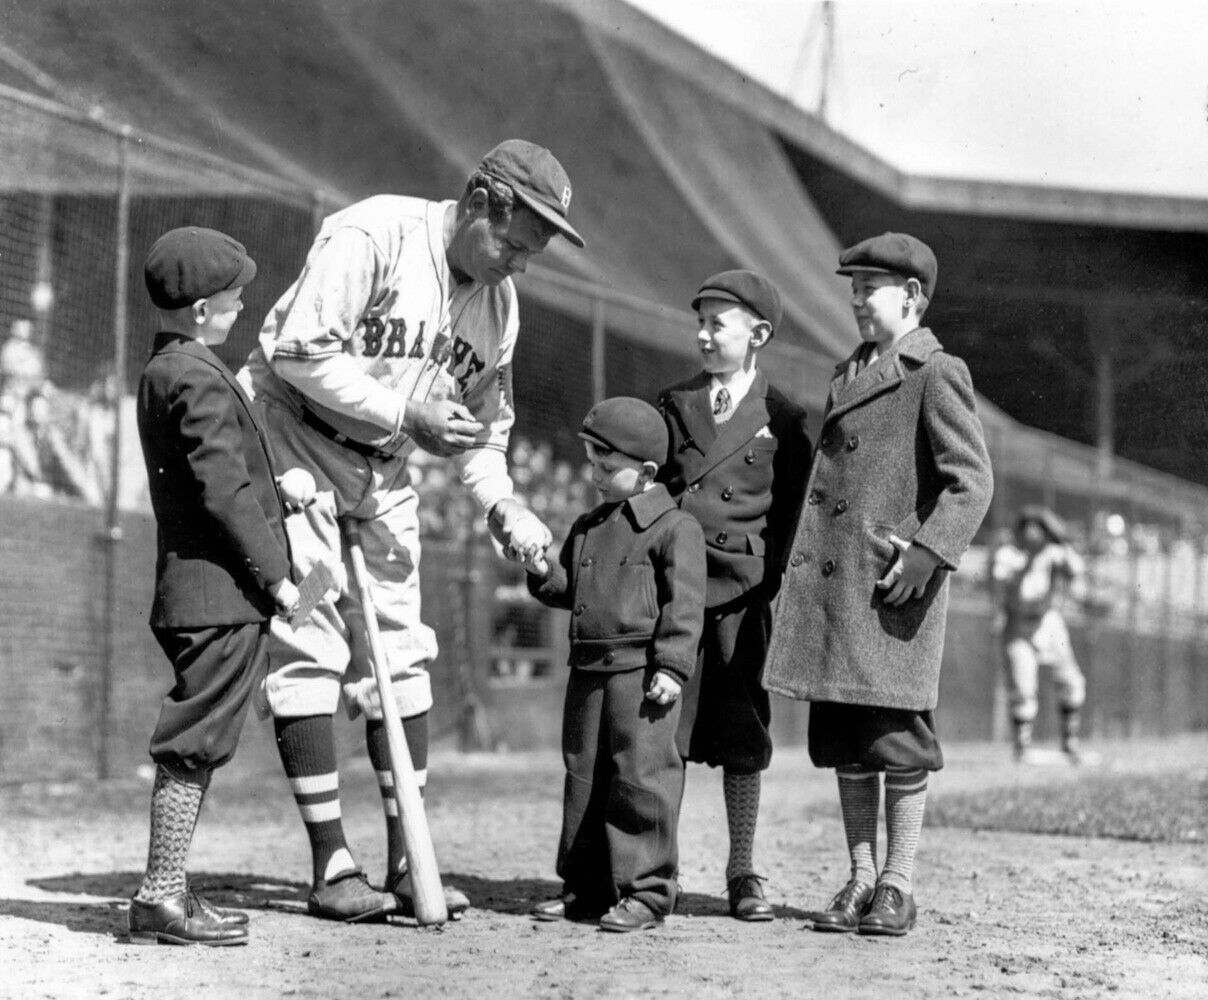 Baseball rare Babe Ruth sign balls for kids Baseball history photos 8x10 Photo